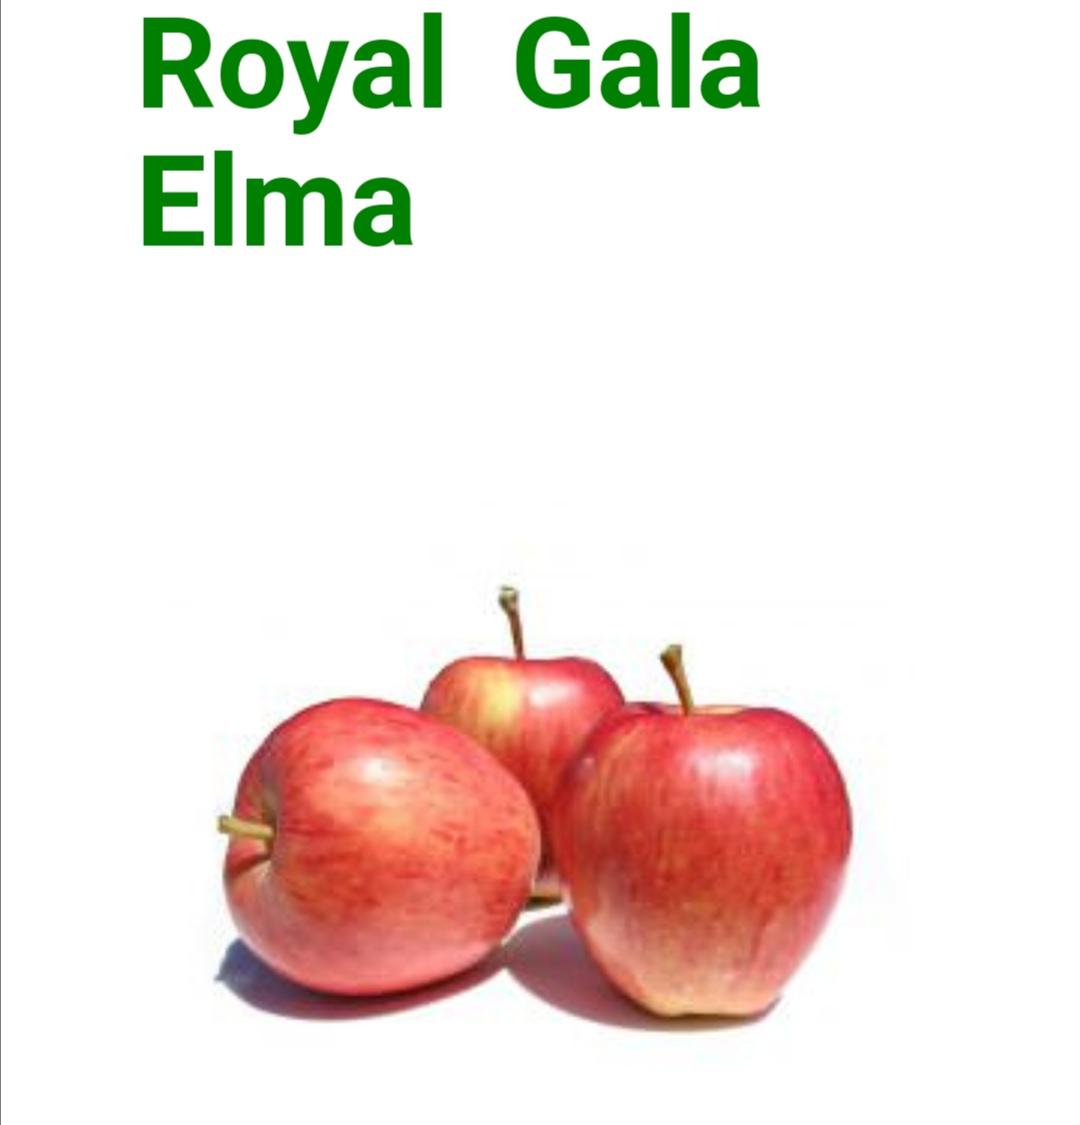 Elma - Eyup Severbas tarafından verilen gala çeşidi elma alım ilanlarını tarimziraat.com adresinde bulabilirsiniz.